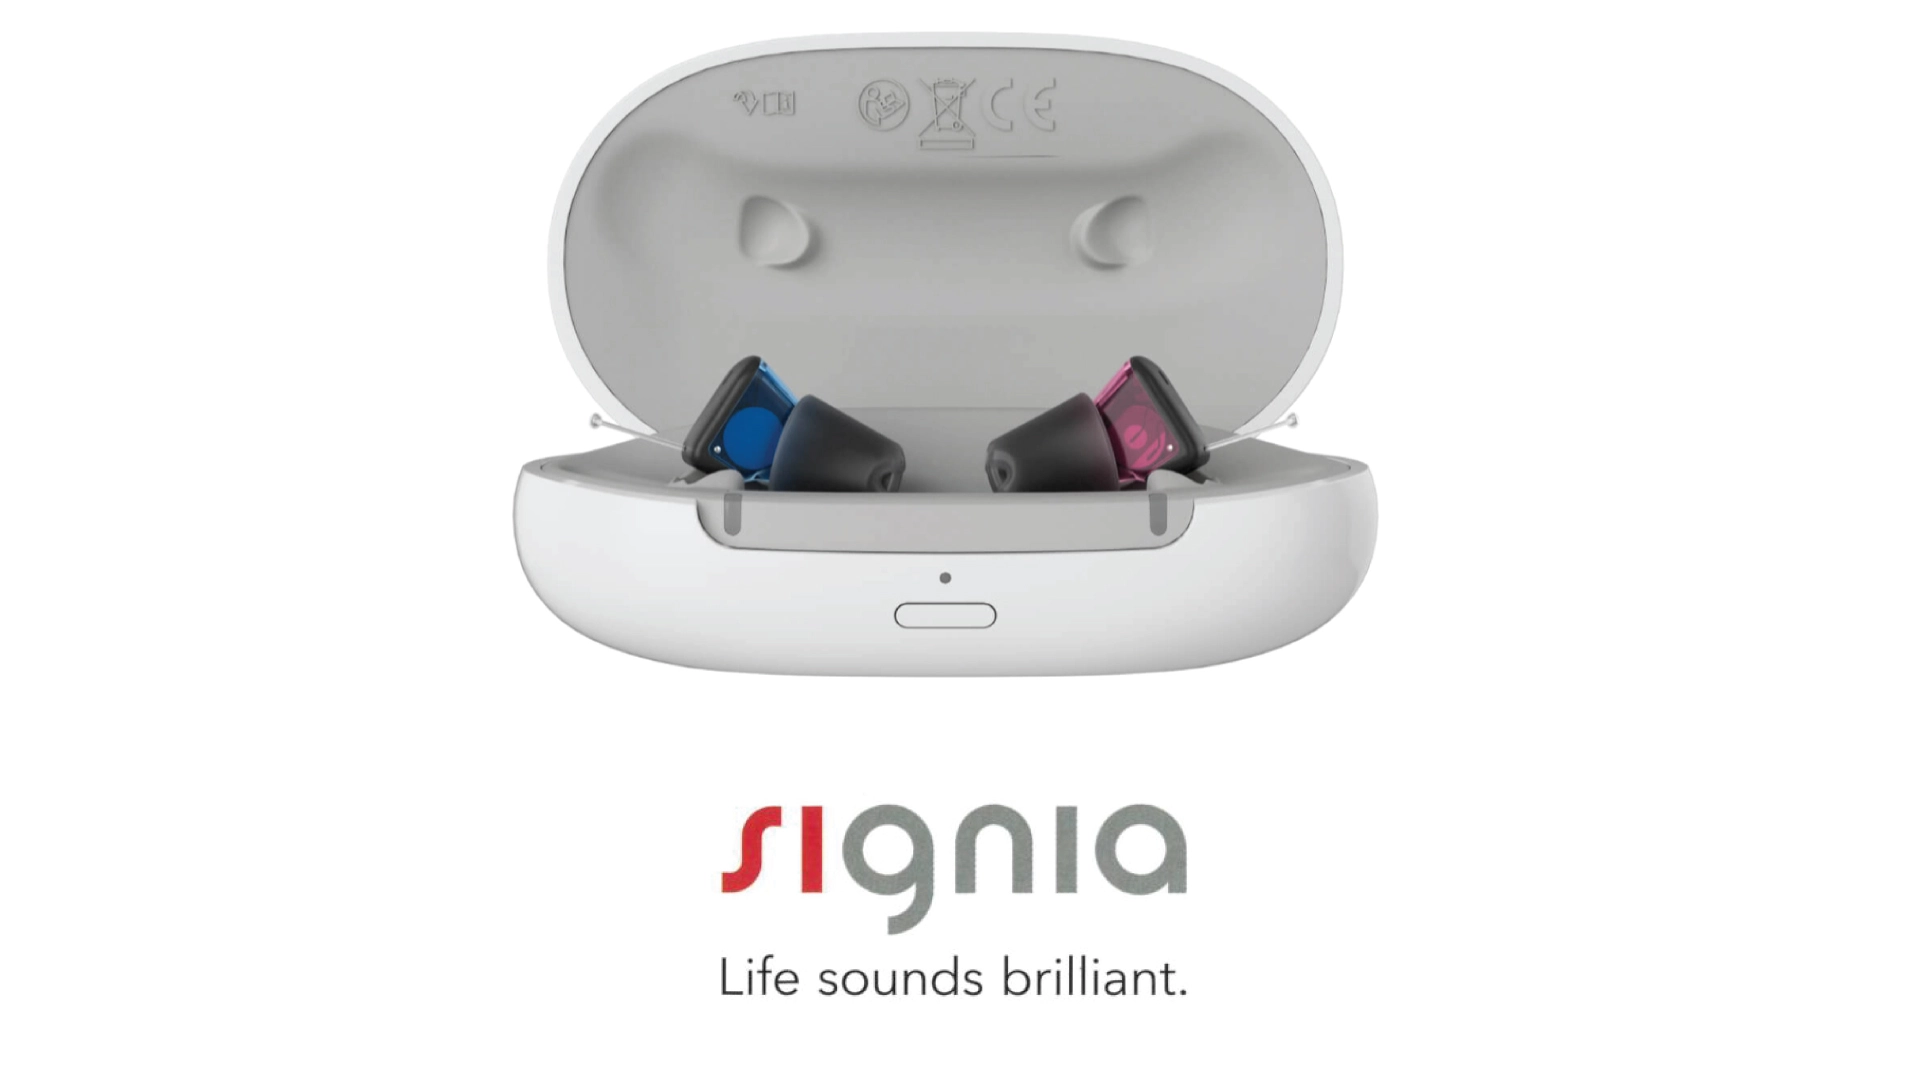 耳あな型補聴器 シグニア シルク ix c&g【signia silk ix c&g】